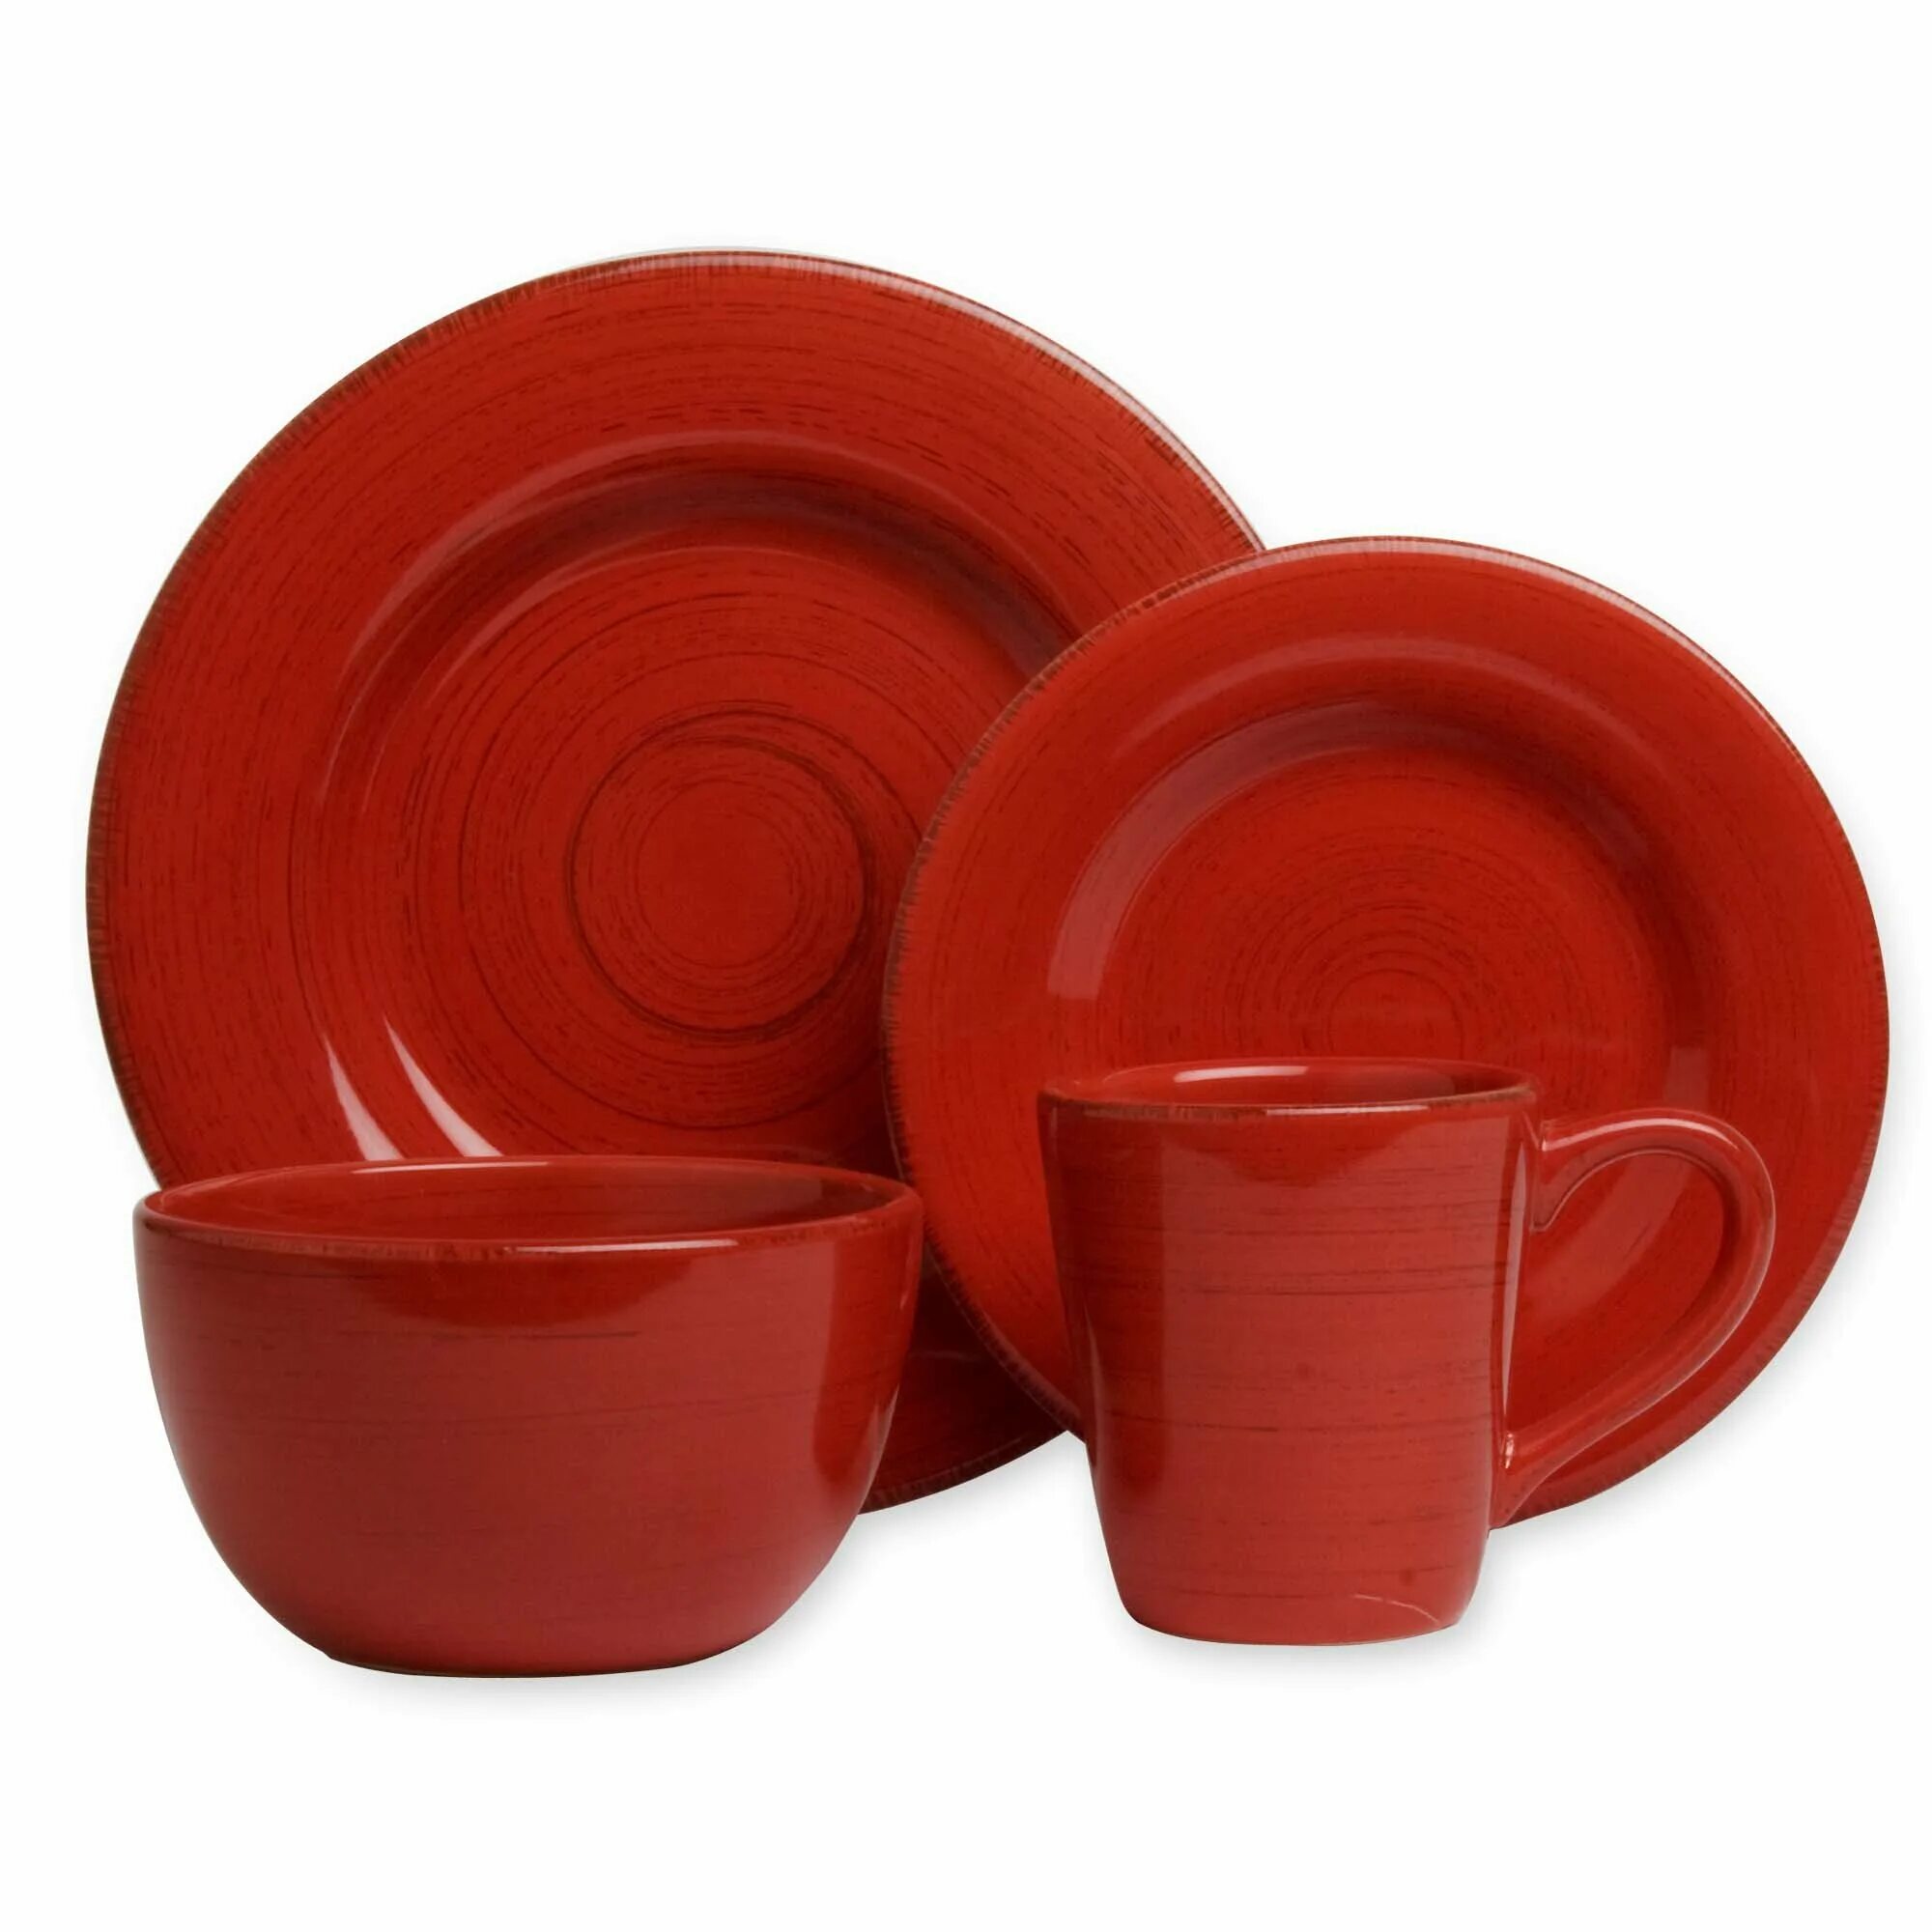 Посуда красного цвета. Набор посуды красный. Красная керамическая посуда. Чайный набор красный. Тарелки красного цвета